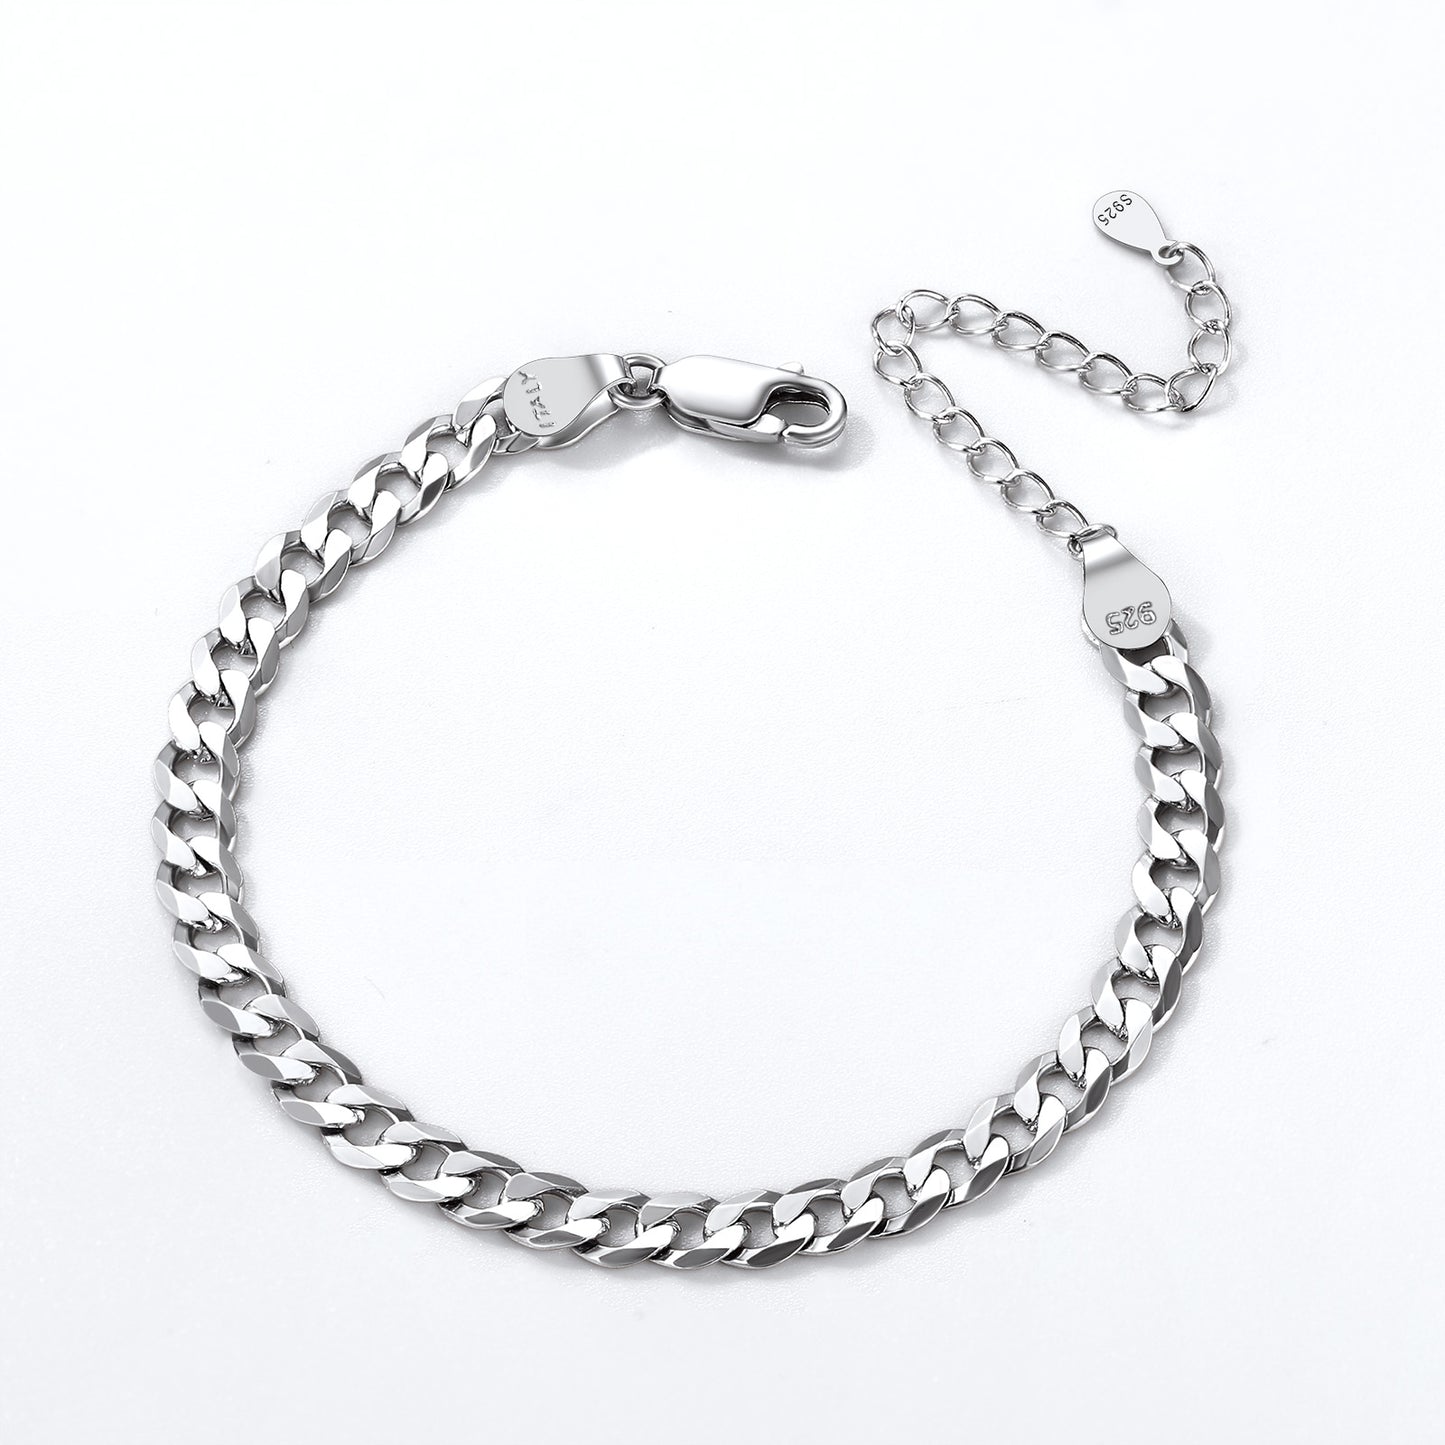 FindChic 925 Sterling Silver Cuban Link Chain Bracelets for Women Men